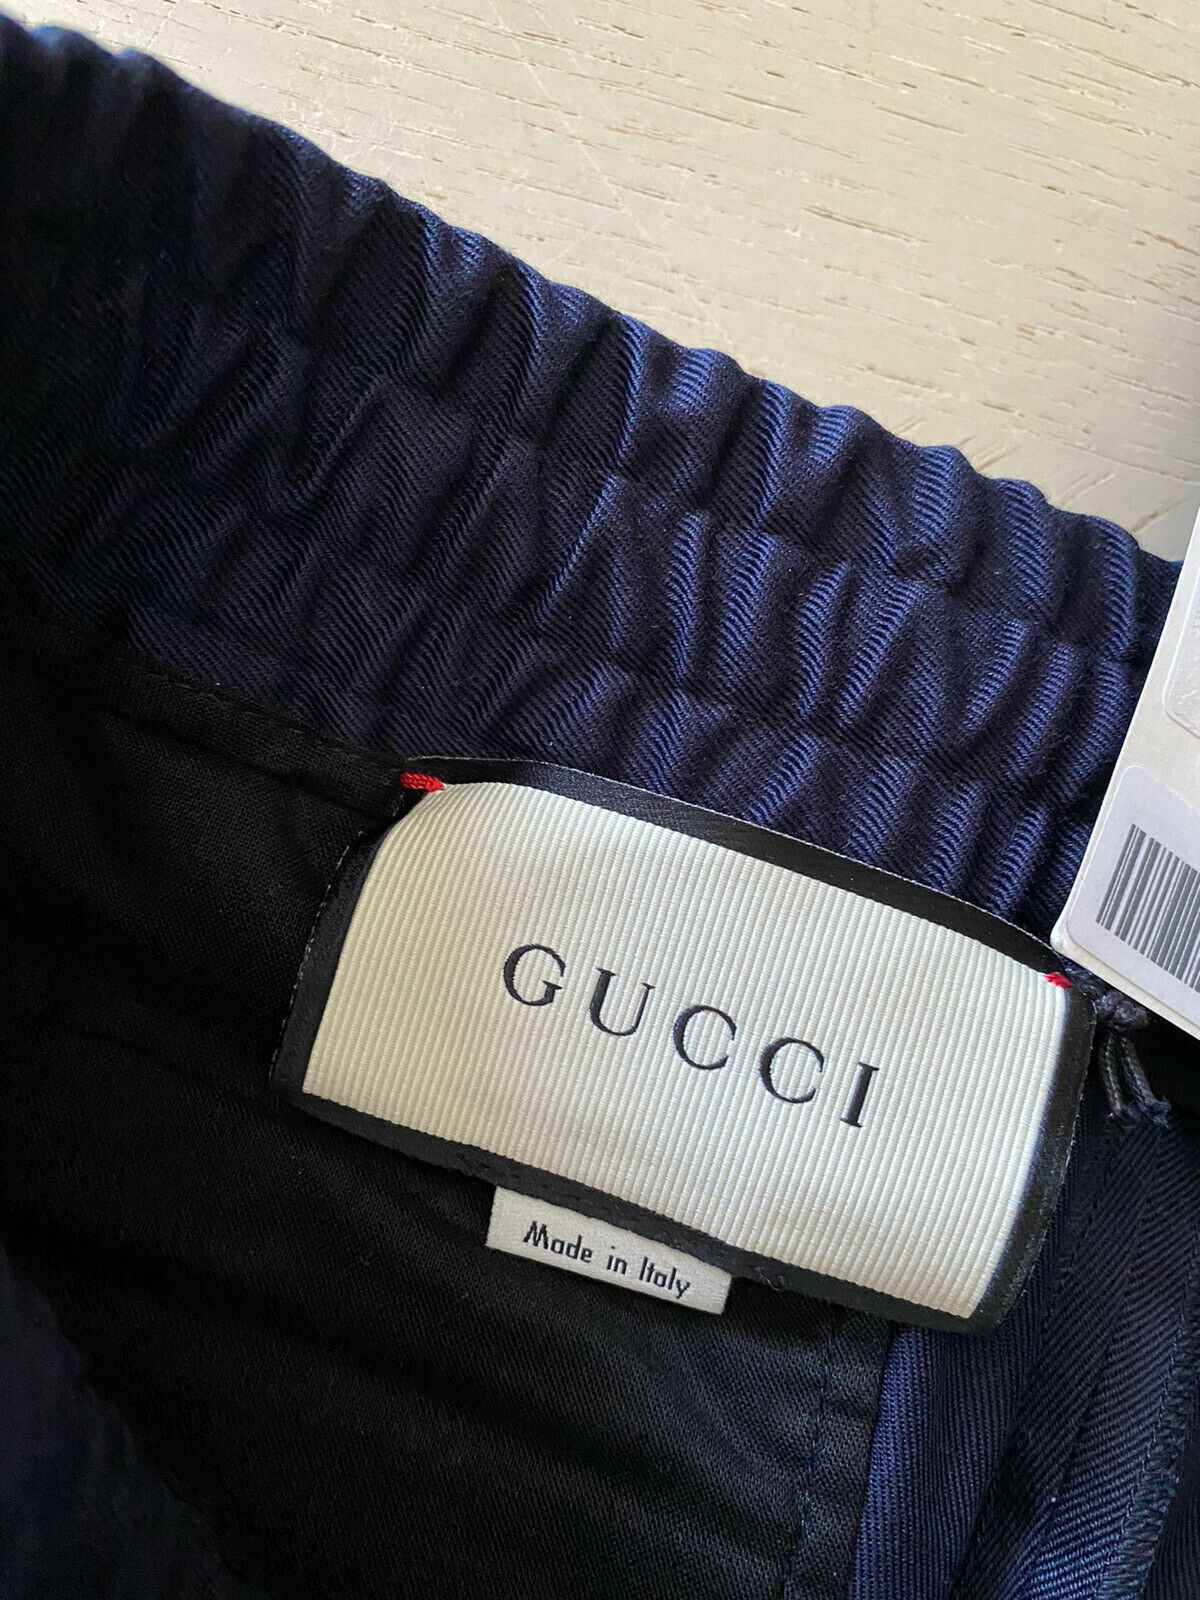 NWT $950 Gucci Men’s Pants Blue 32 US ( 48 Eu ) Italy